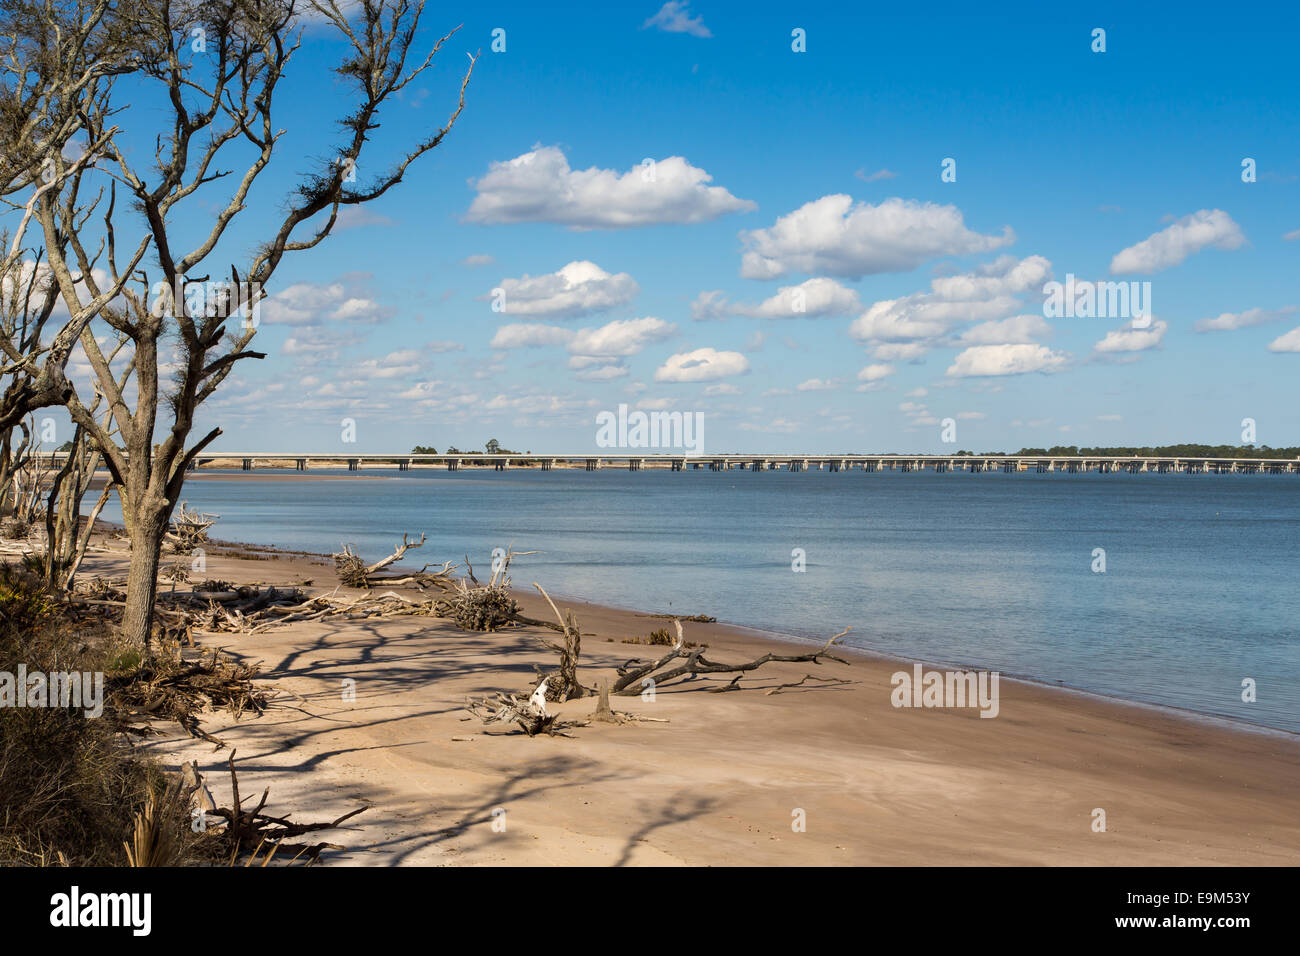 C'est la vue de la plage à Big Talbot Island, en Floride. Le pont mène à Amelia Island. Banque D'Images